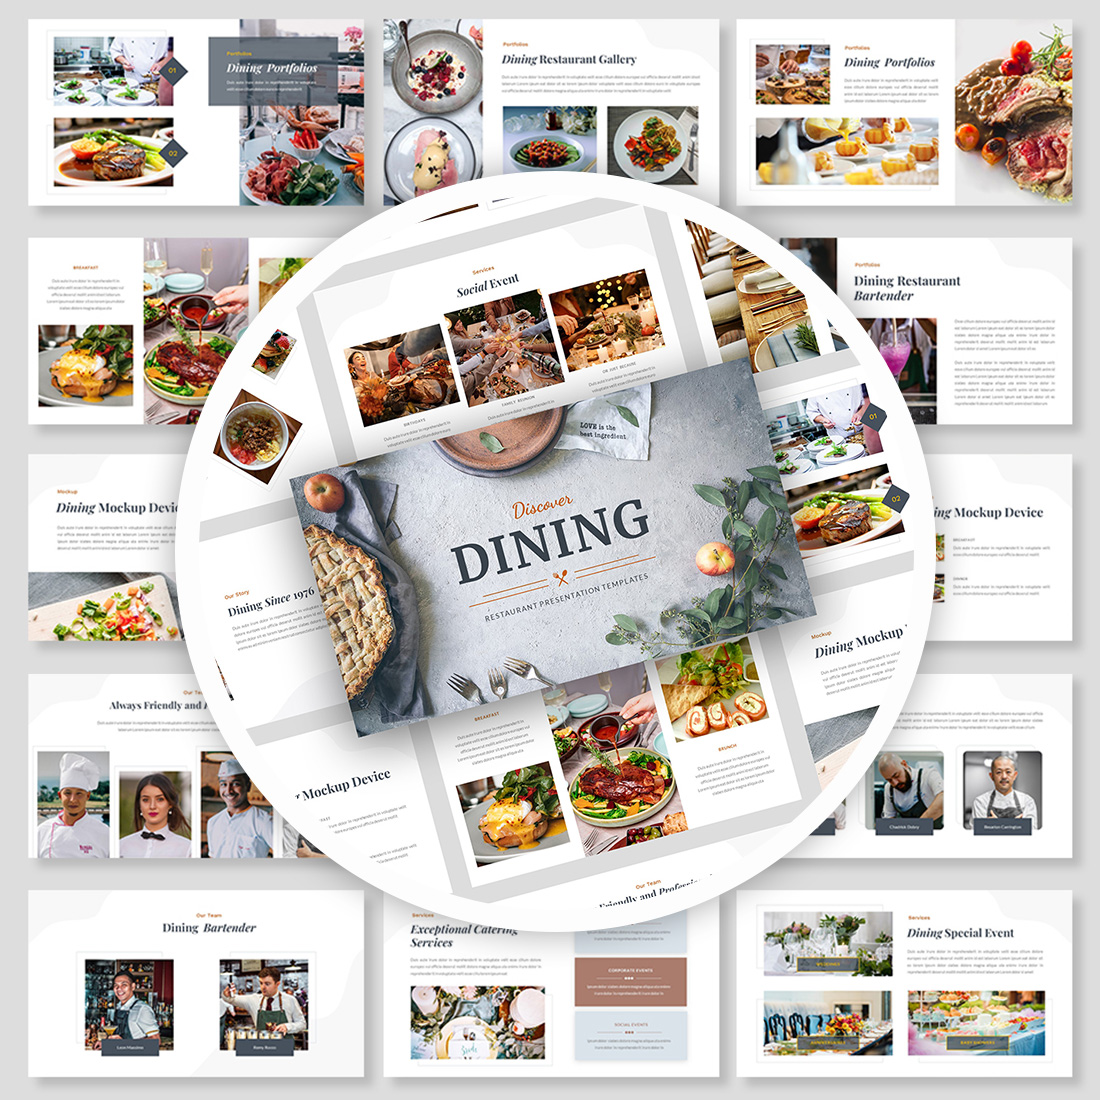 Restaurant Presentation Google Slides Template cover image.